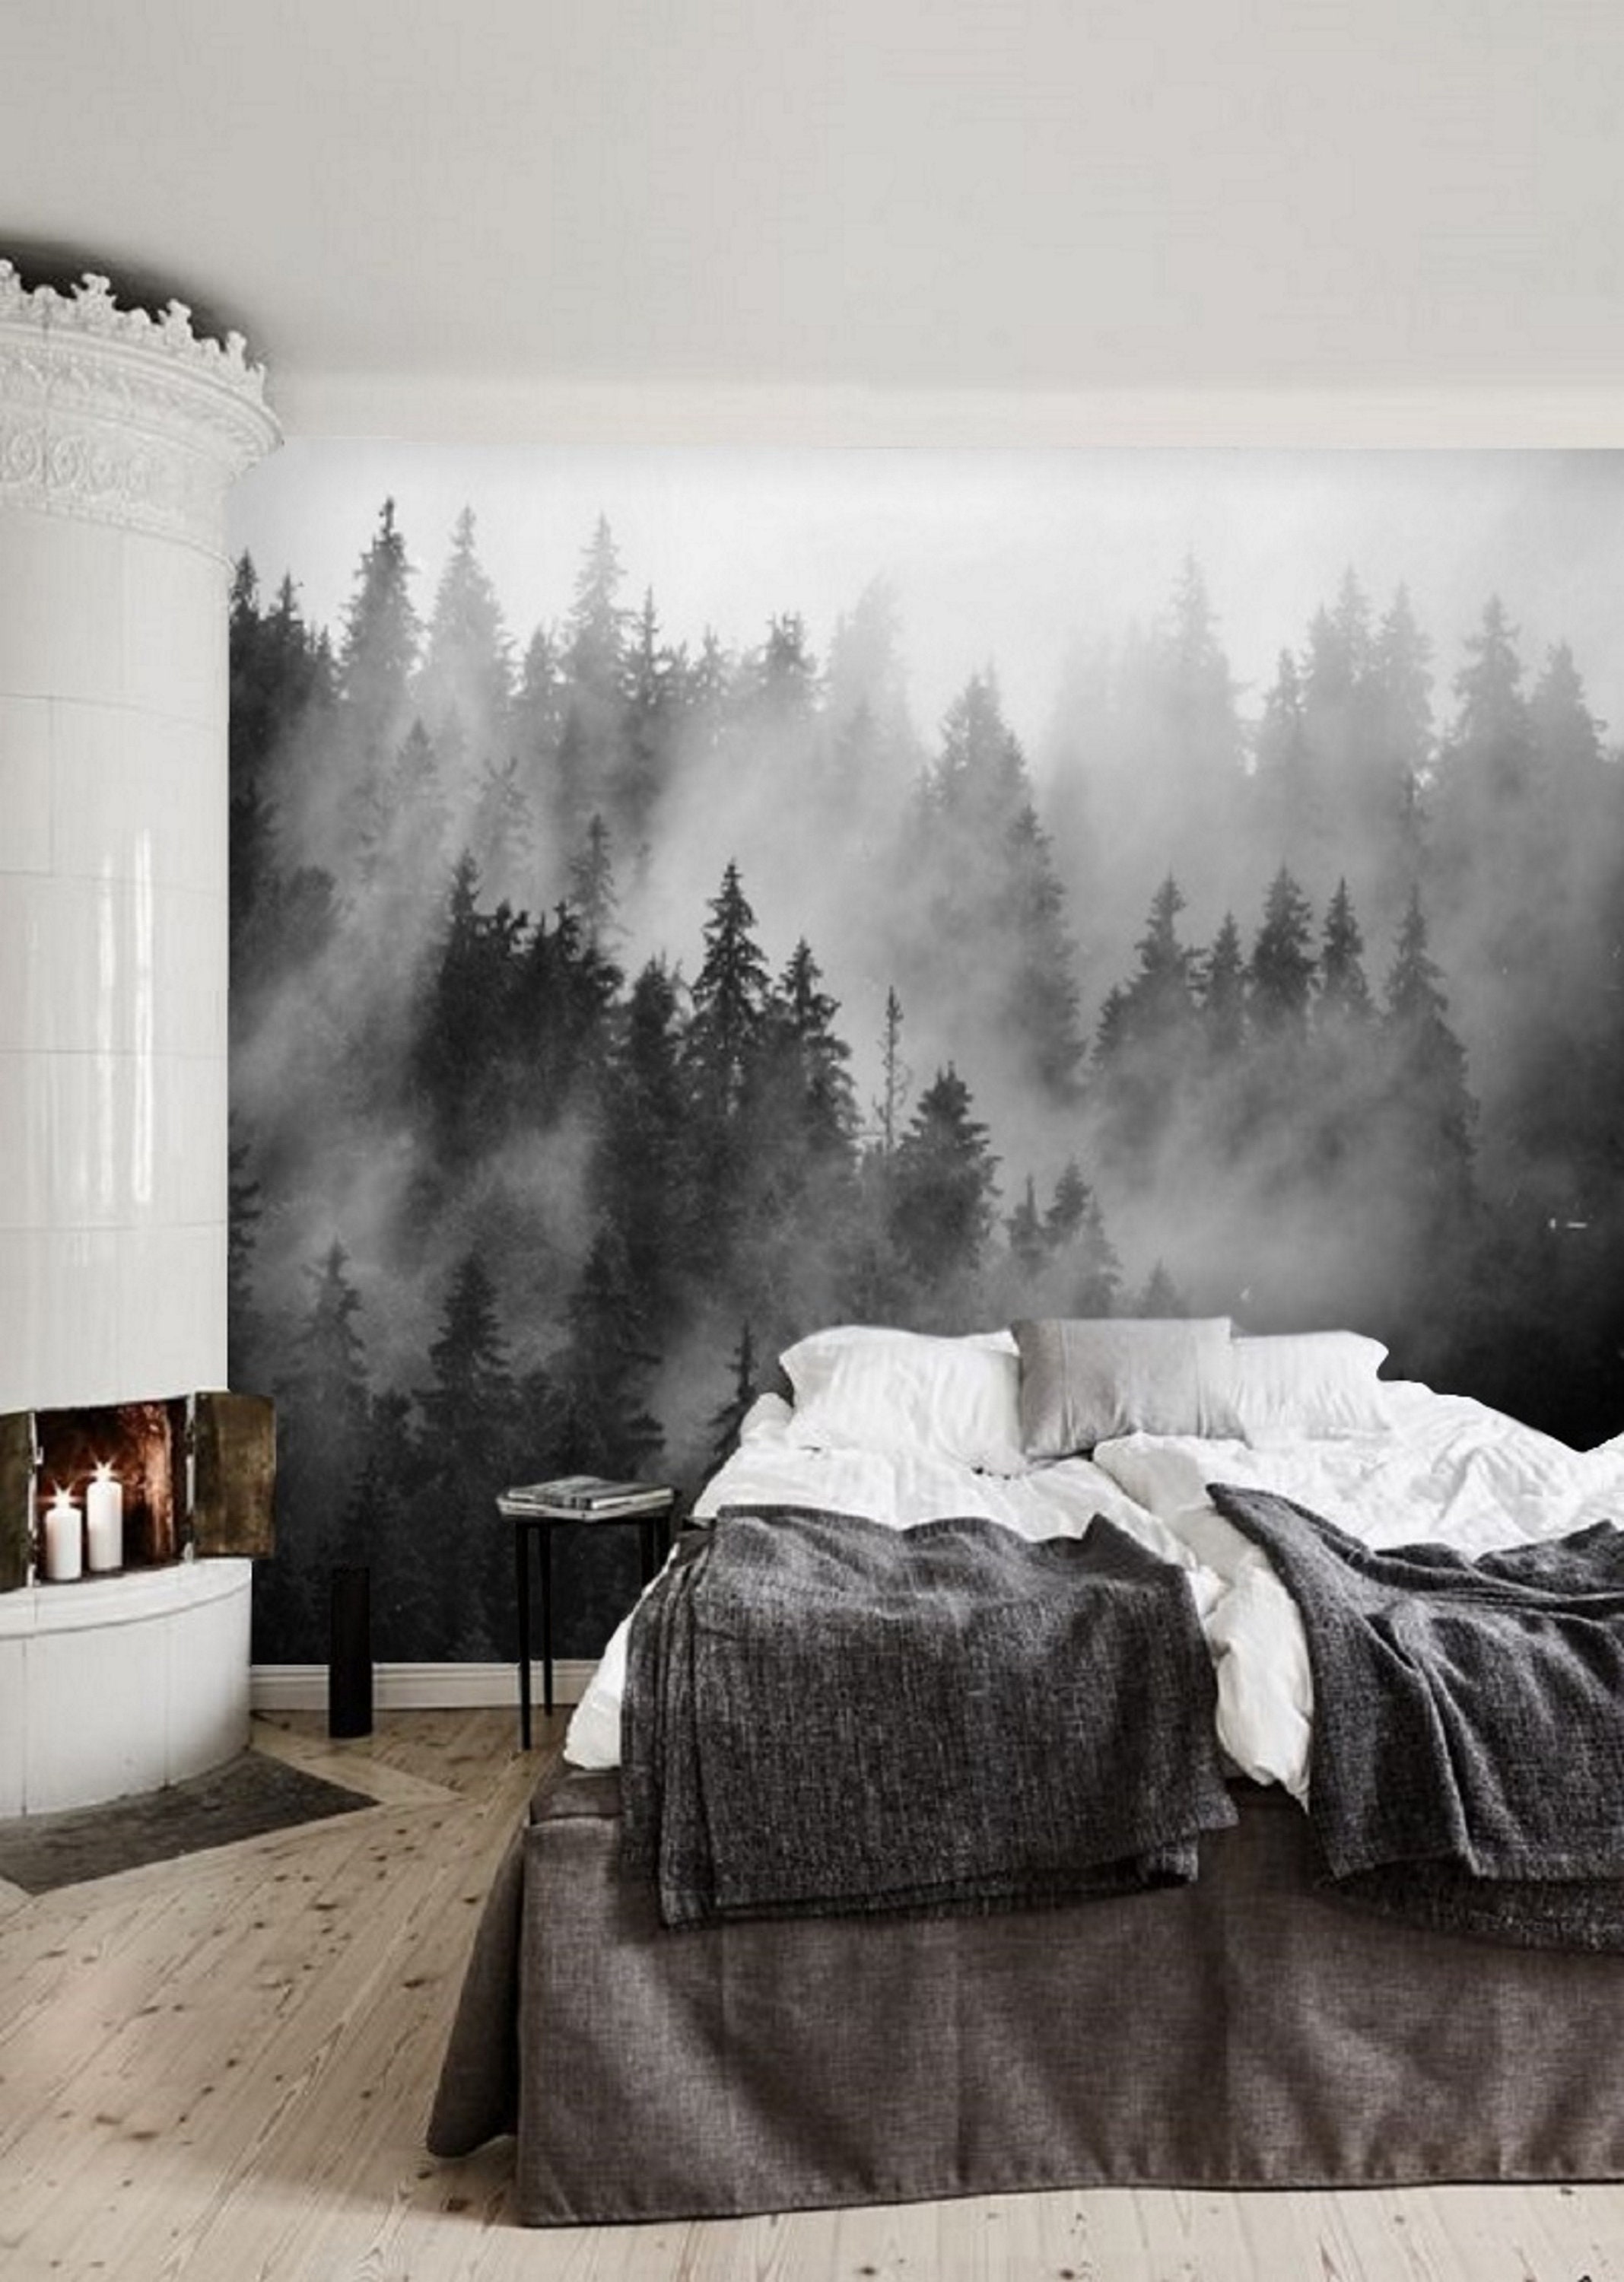  Murales de pared Papel pintado blanco y negro paisaje bosque de  alces mural para dormitorio, sala de estar, sofá, TV fondos de pared  decoración de pared 157.5 x 110.2 in 